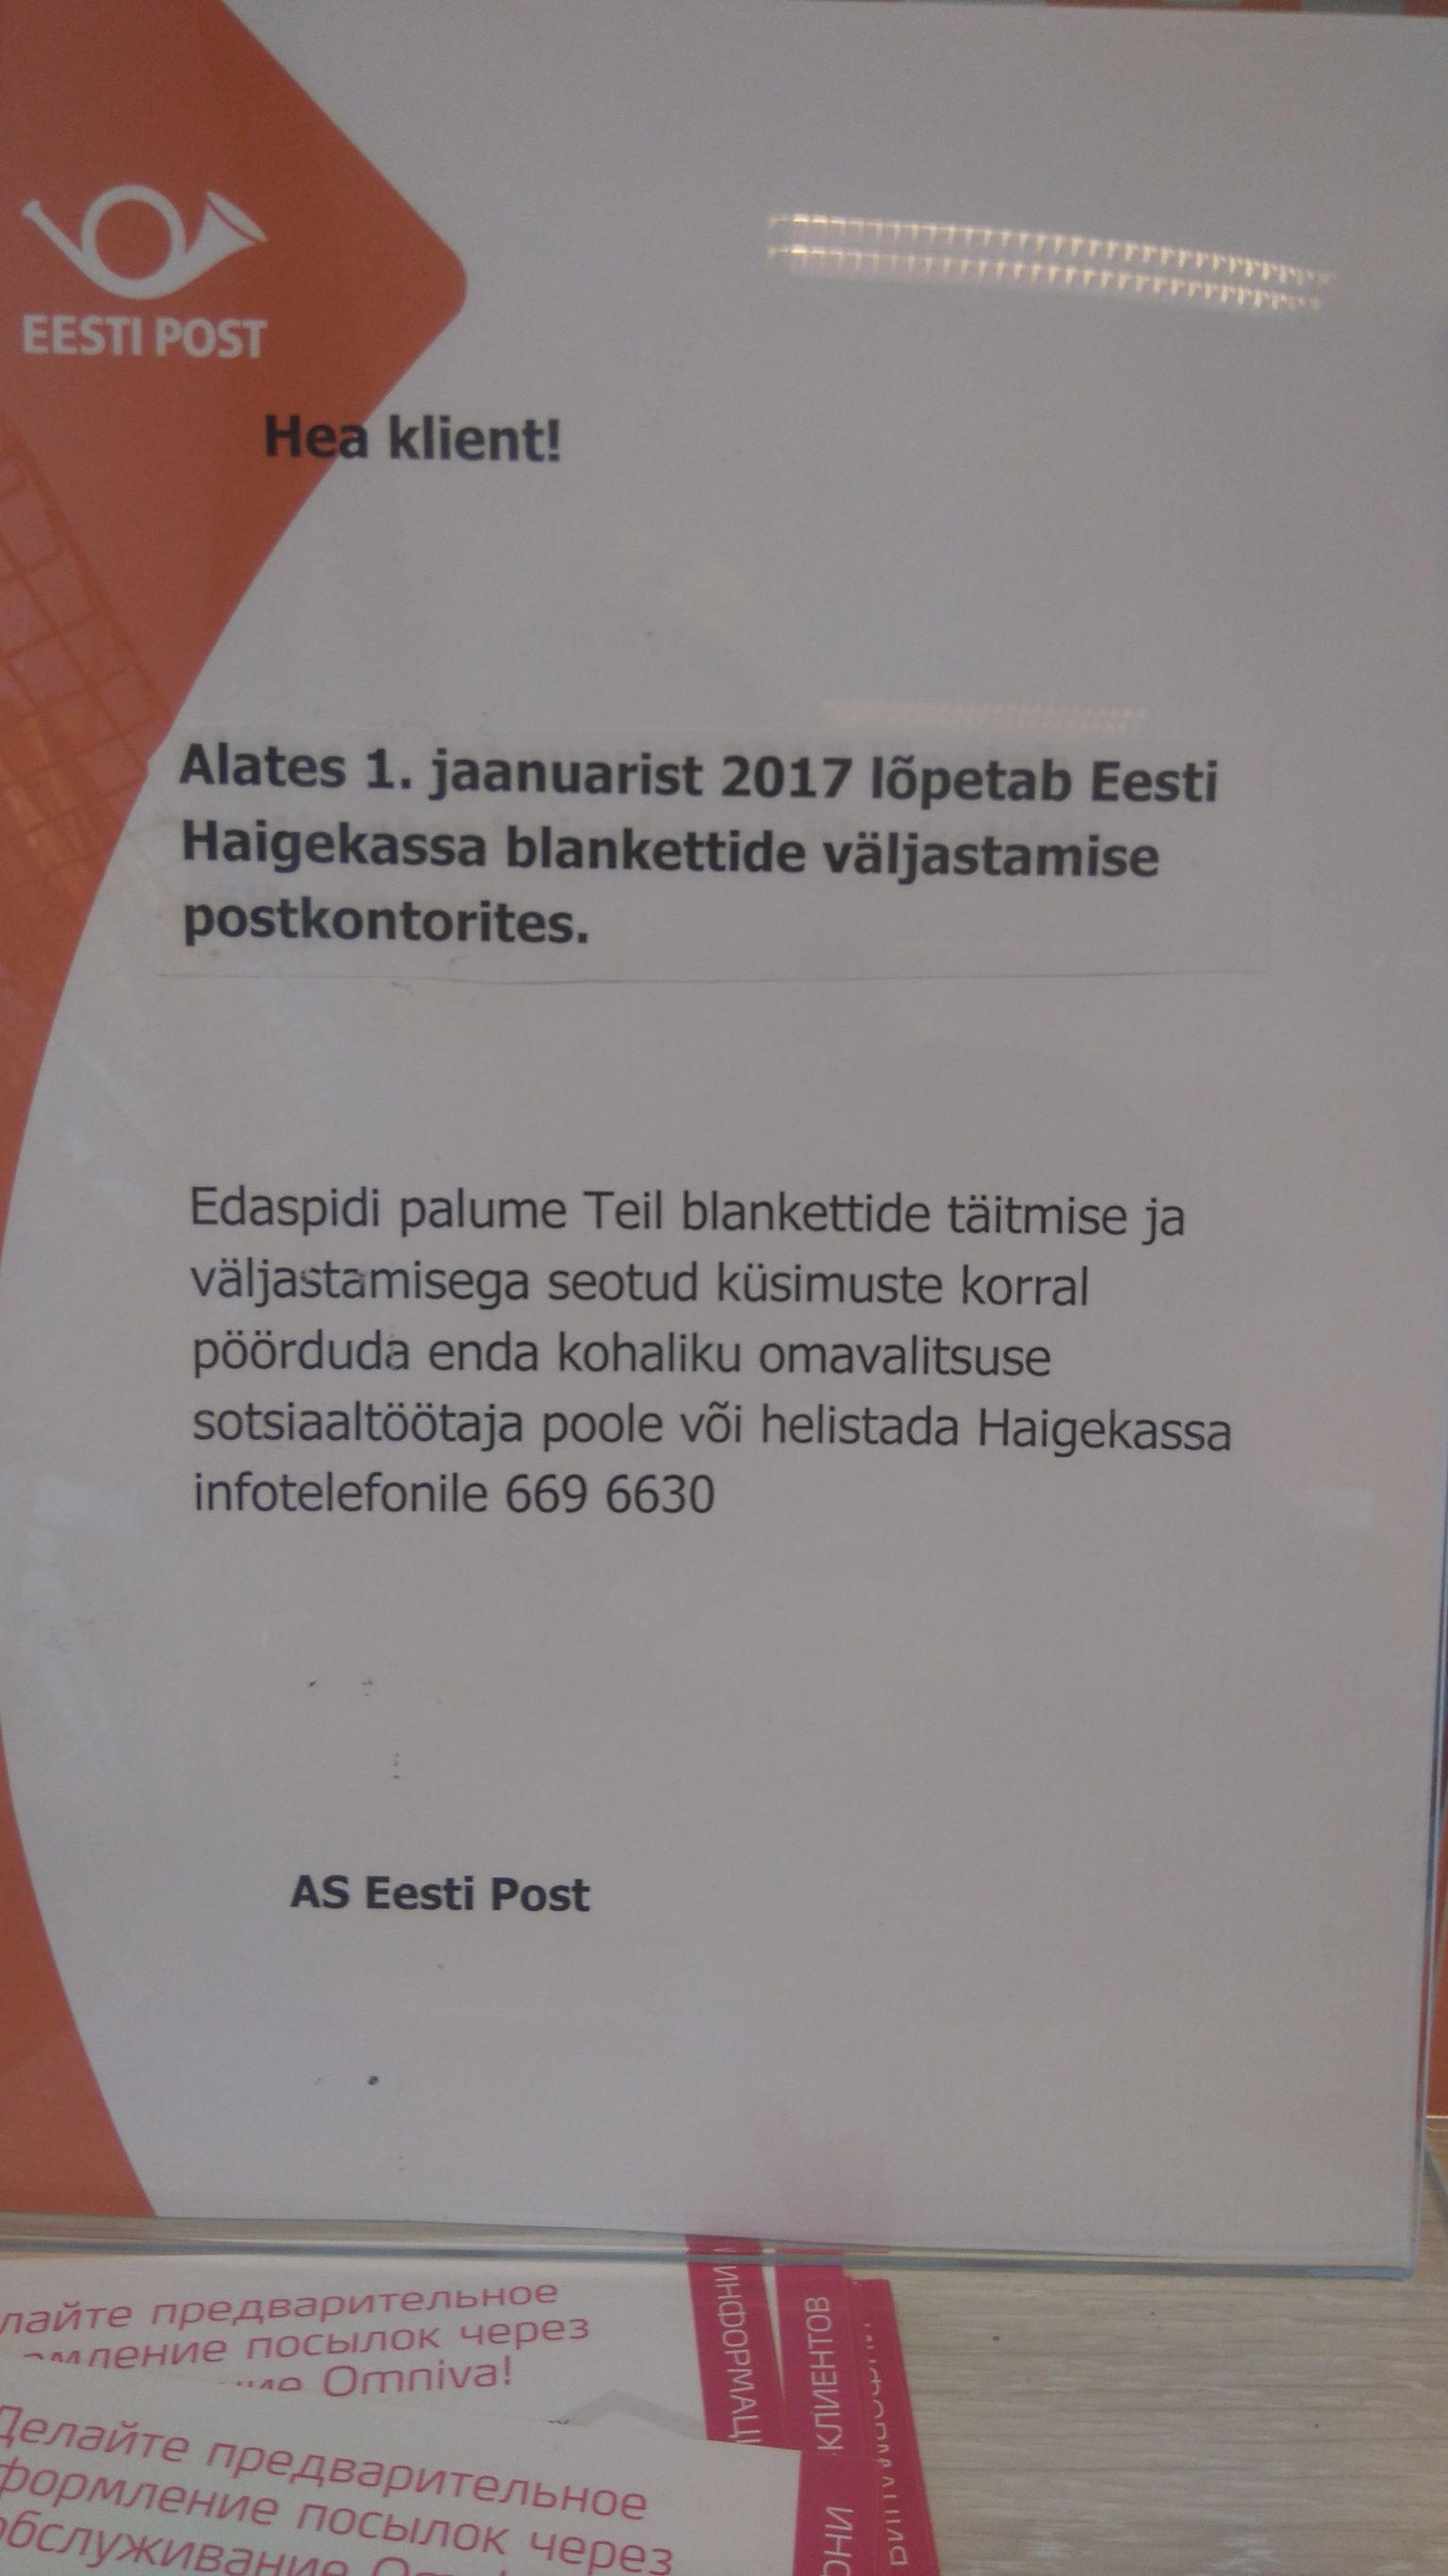 Объявление в нарвской почтовой конторе ошибочно направляло заявителей Эстонской больничной кассы к социальным работникам местного самоуправления.